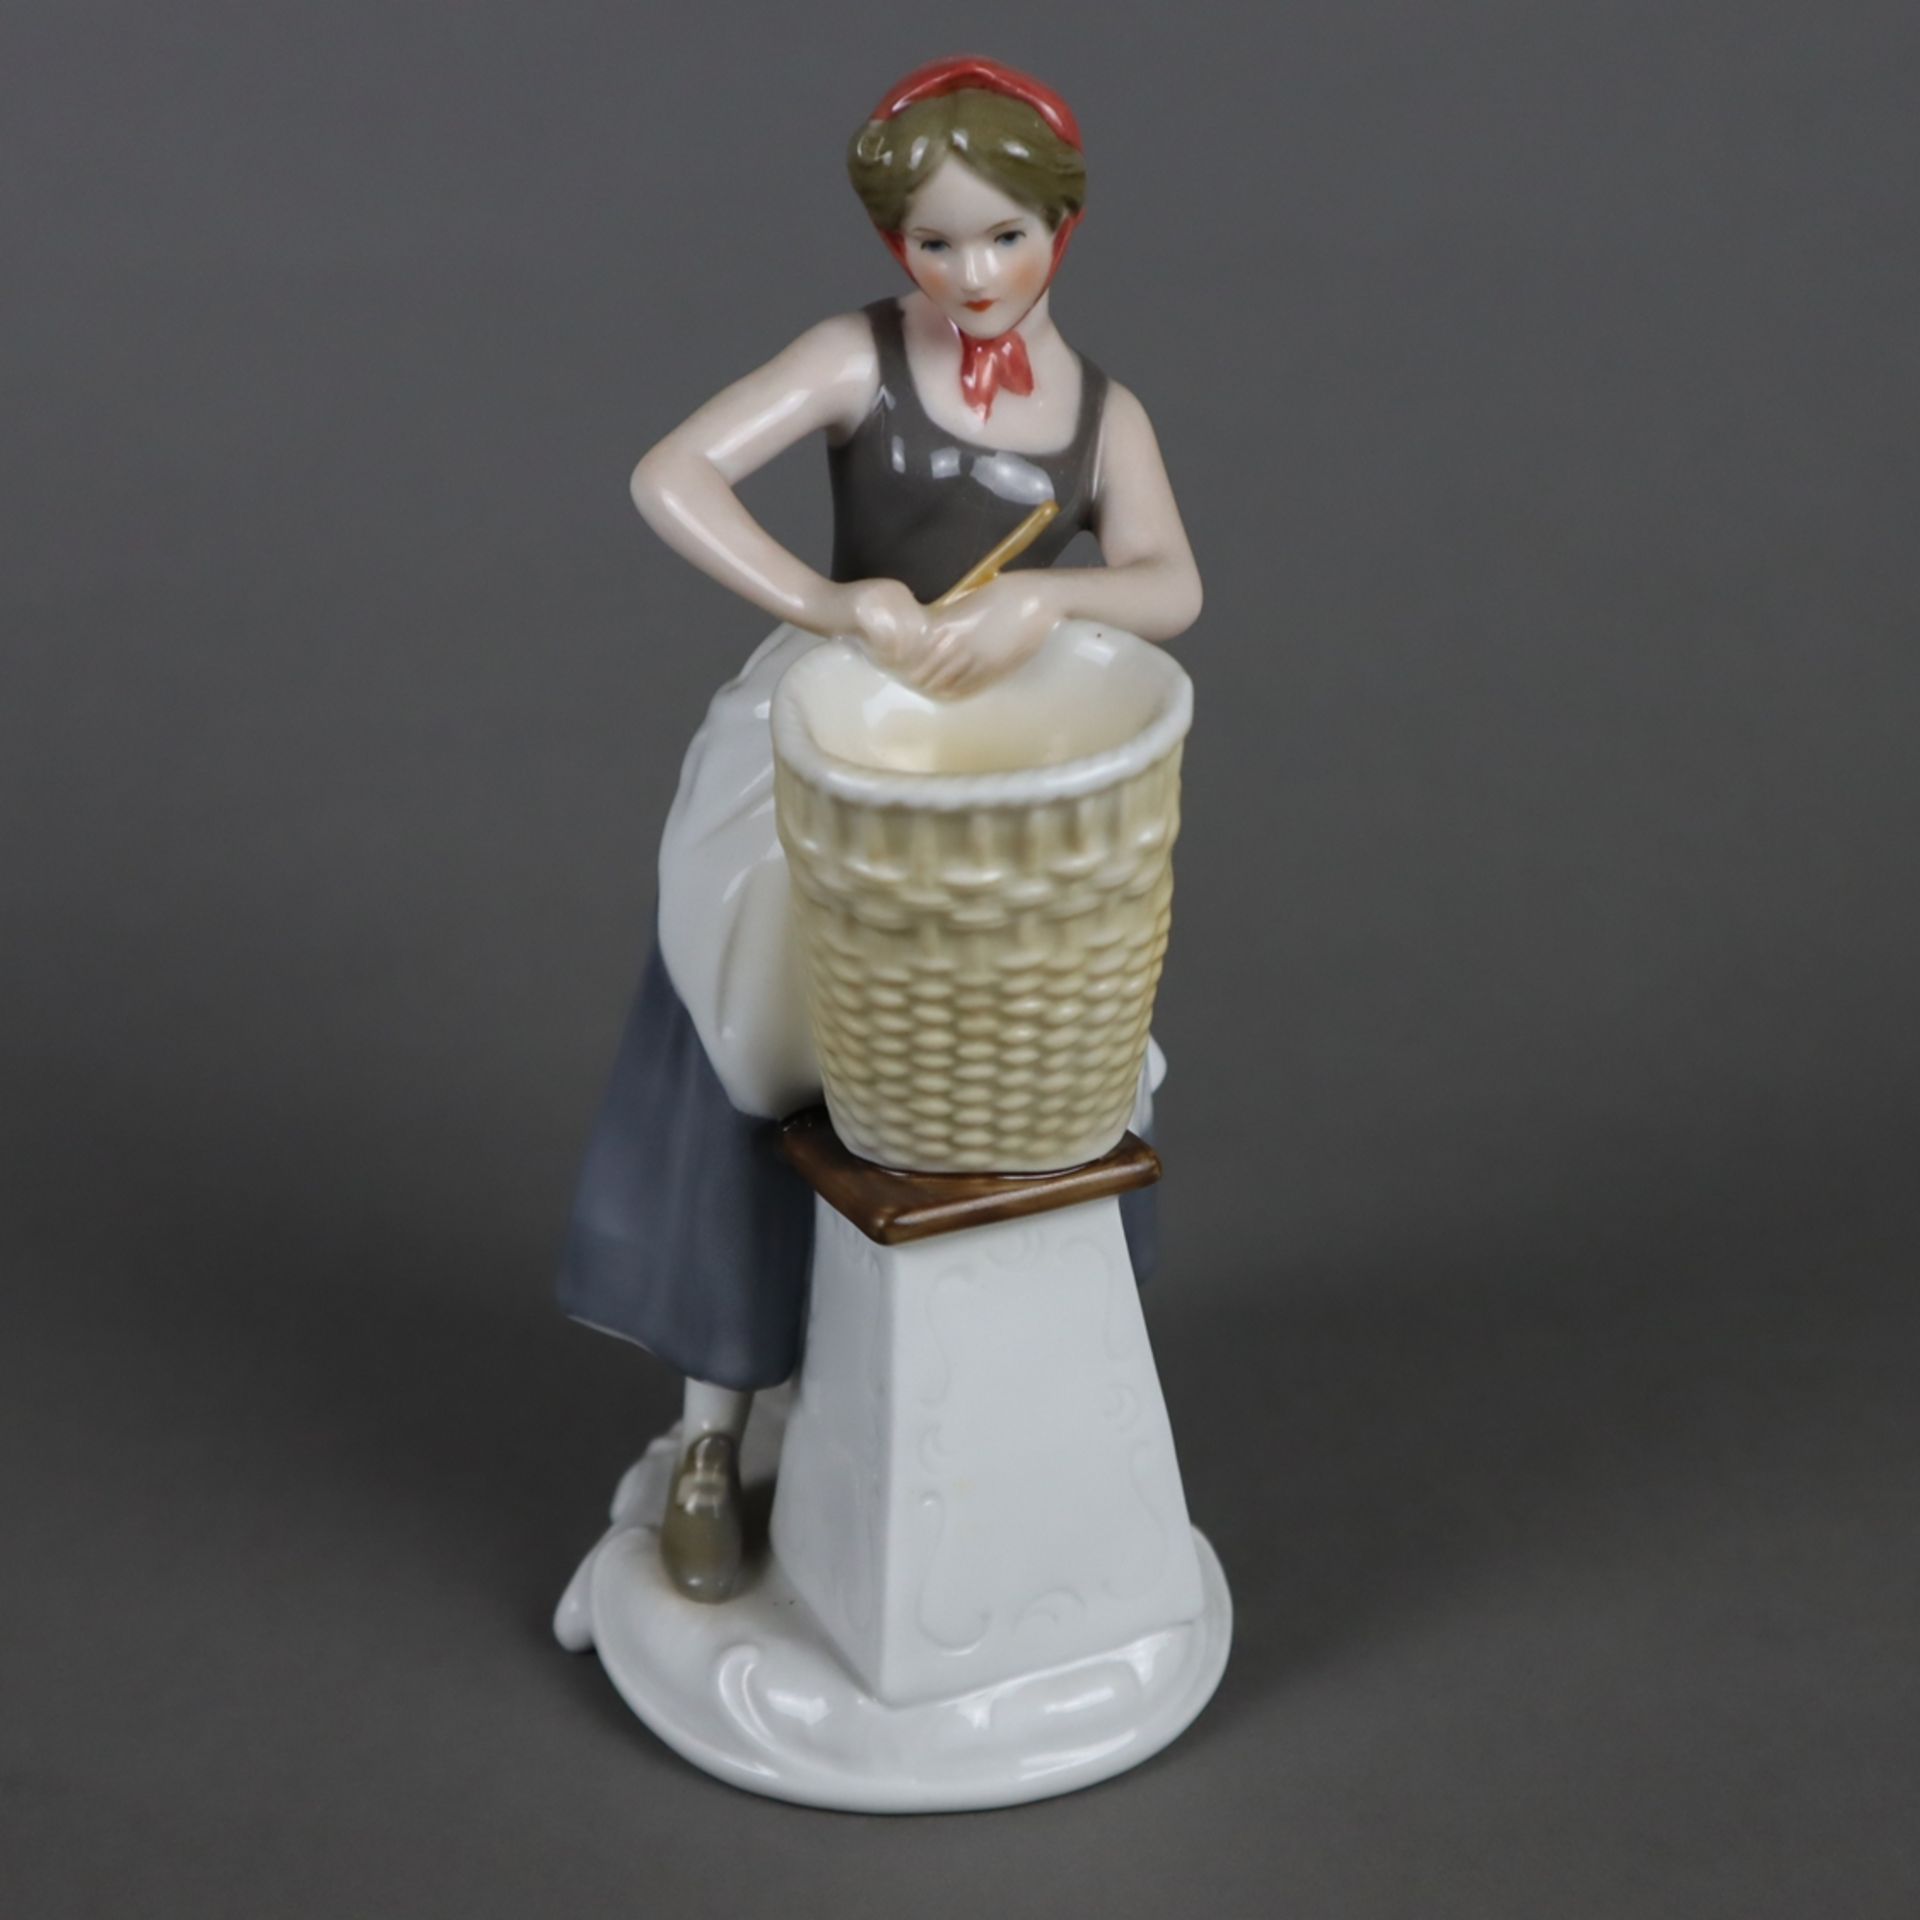 Porzellanfigur "Korbflechterin" - Goebel, Modell-Nr.16 053 aus der Handwerker-Serie, Porzellan, pol